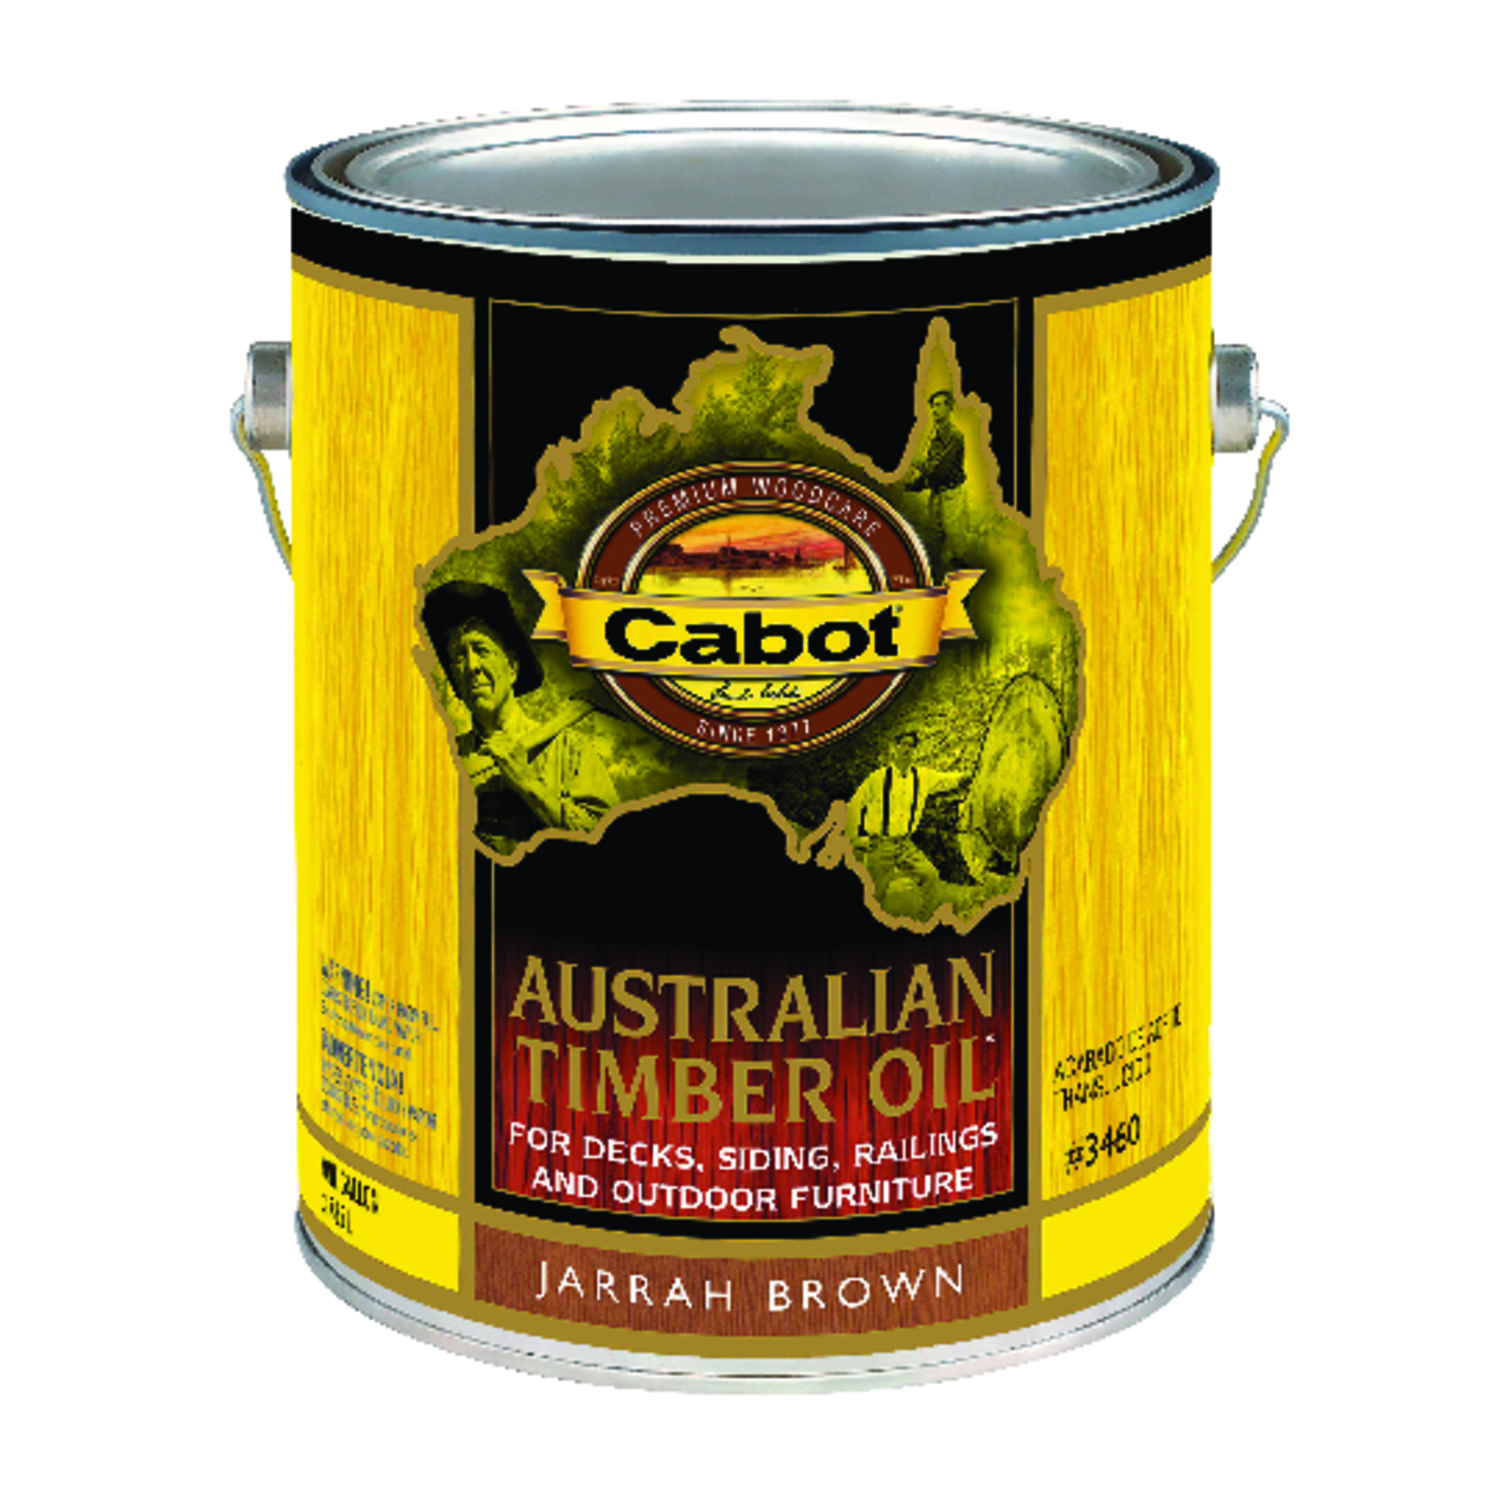 Cabot Australian Timber Oil Transparent Jarrah Brown Oil-Based Australian Timber Oil 1 gal